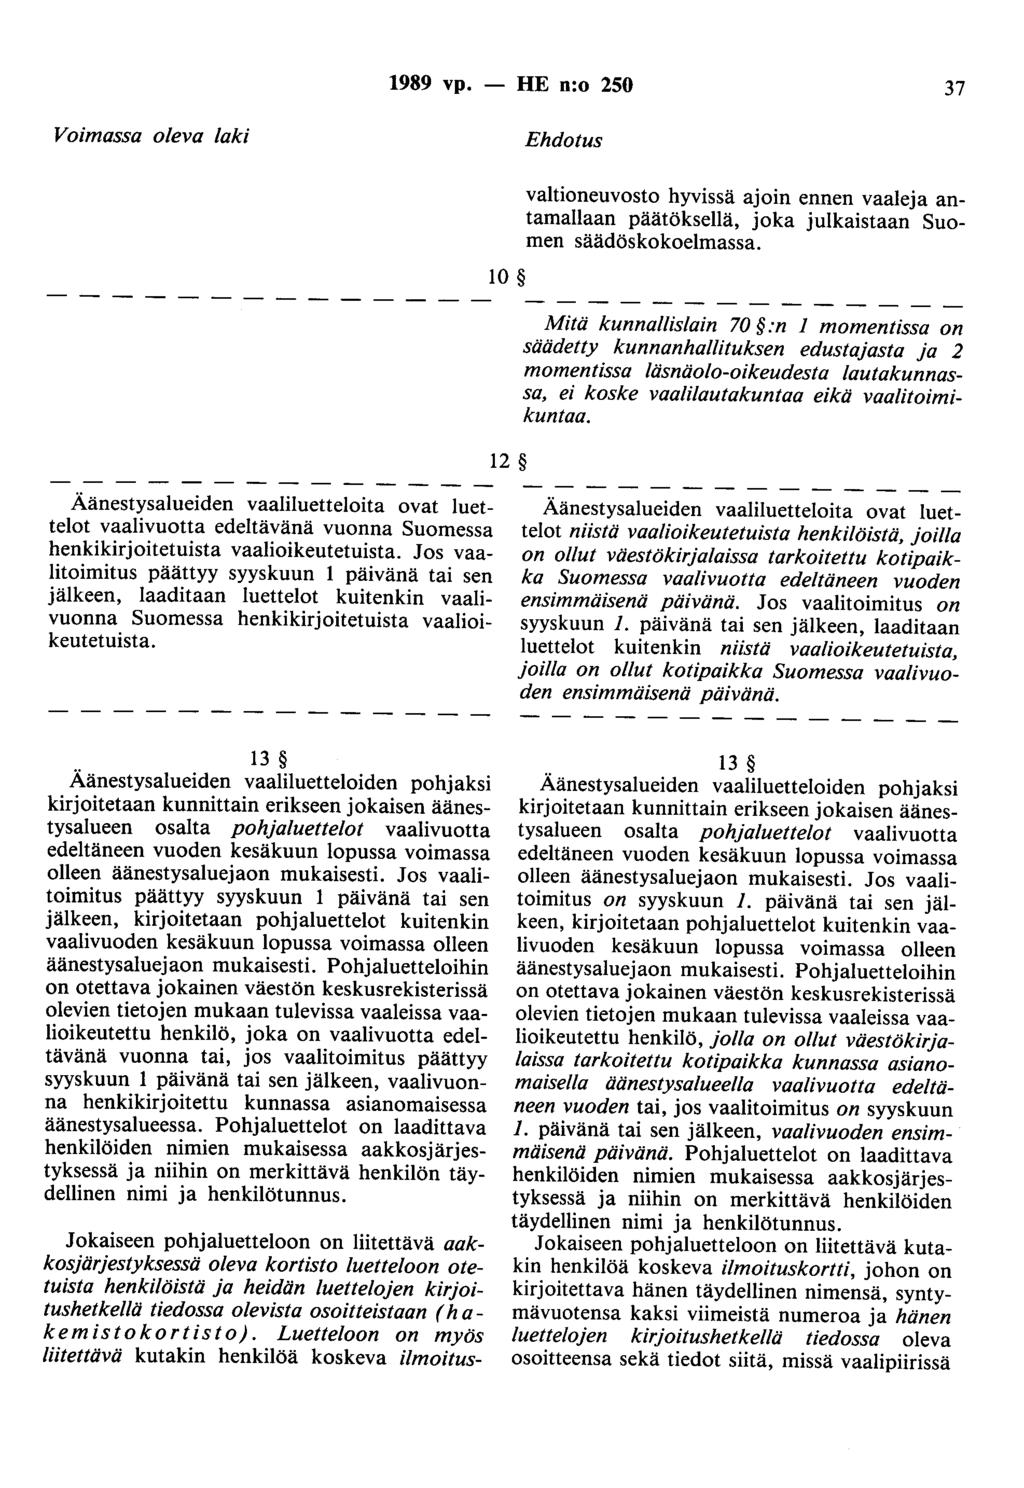 1989 vp. - HE n:o 250 37 Voimassa oleva laki Ehdotus 10 12 valtioneuvosto hyvissä ajoin ennen vaaleja antamallaan päätöksellä, joka julkaistaan Suomen säädöskokoelmassa.